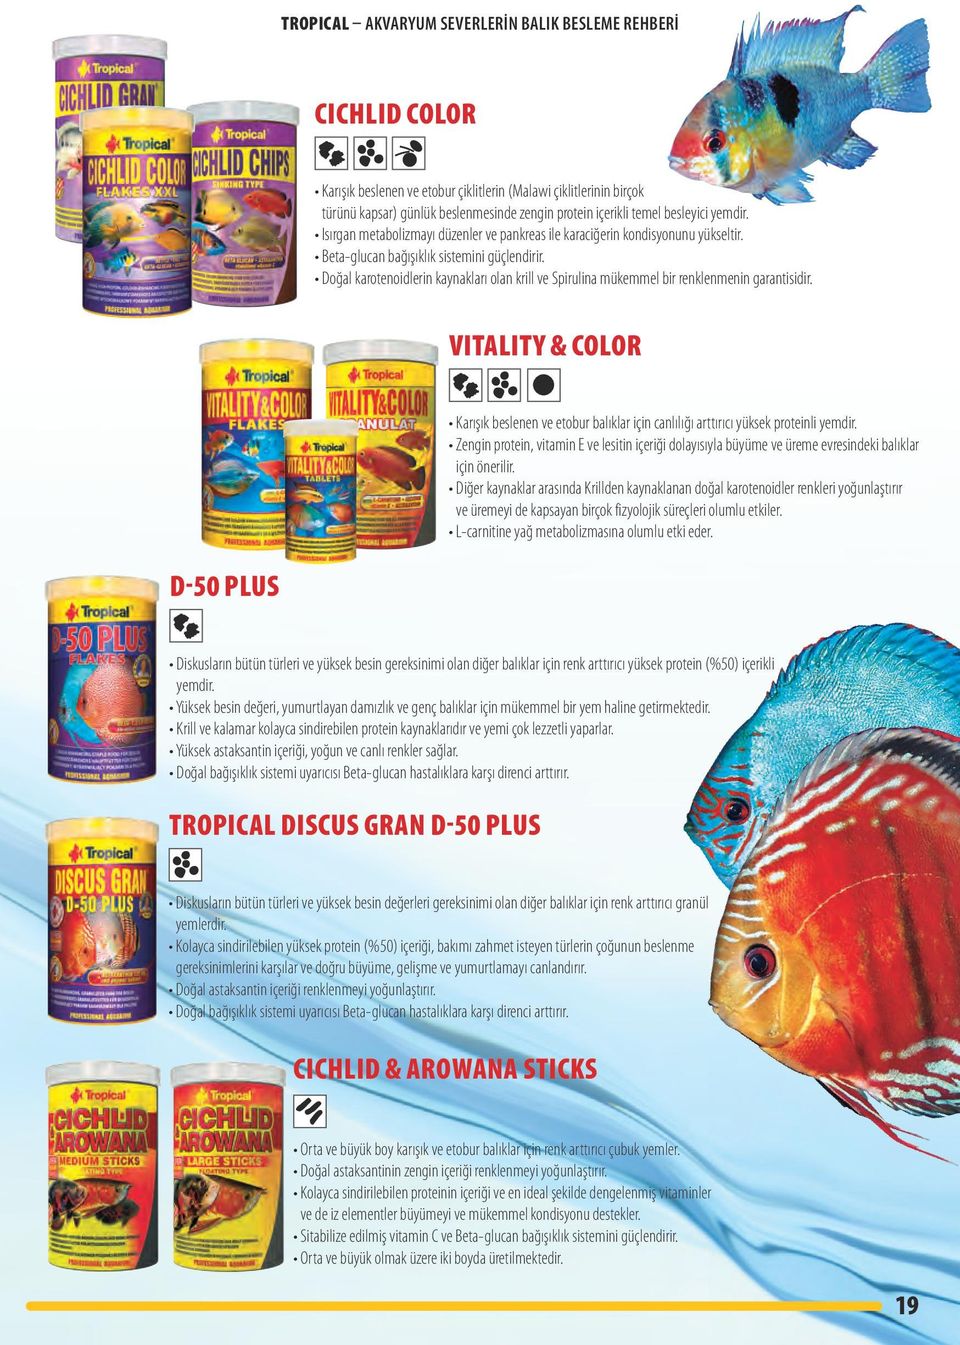 Doğal karotenoidlerin kaynakları olan krill ve Spirulina mükemmel bir renklenmenin garantisidir.